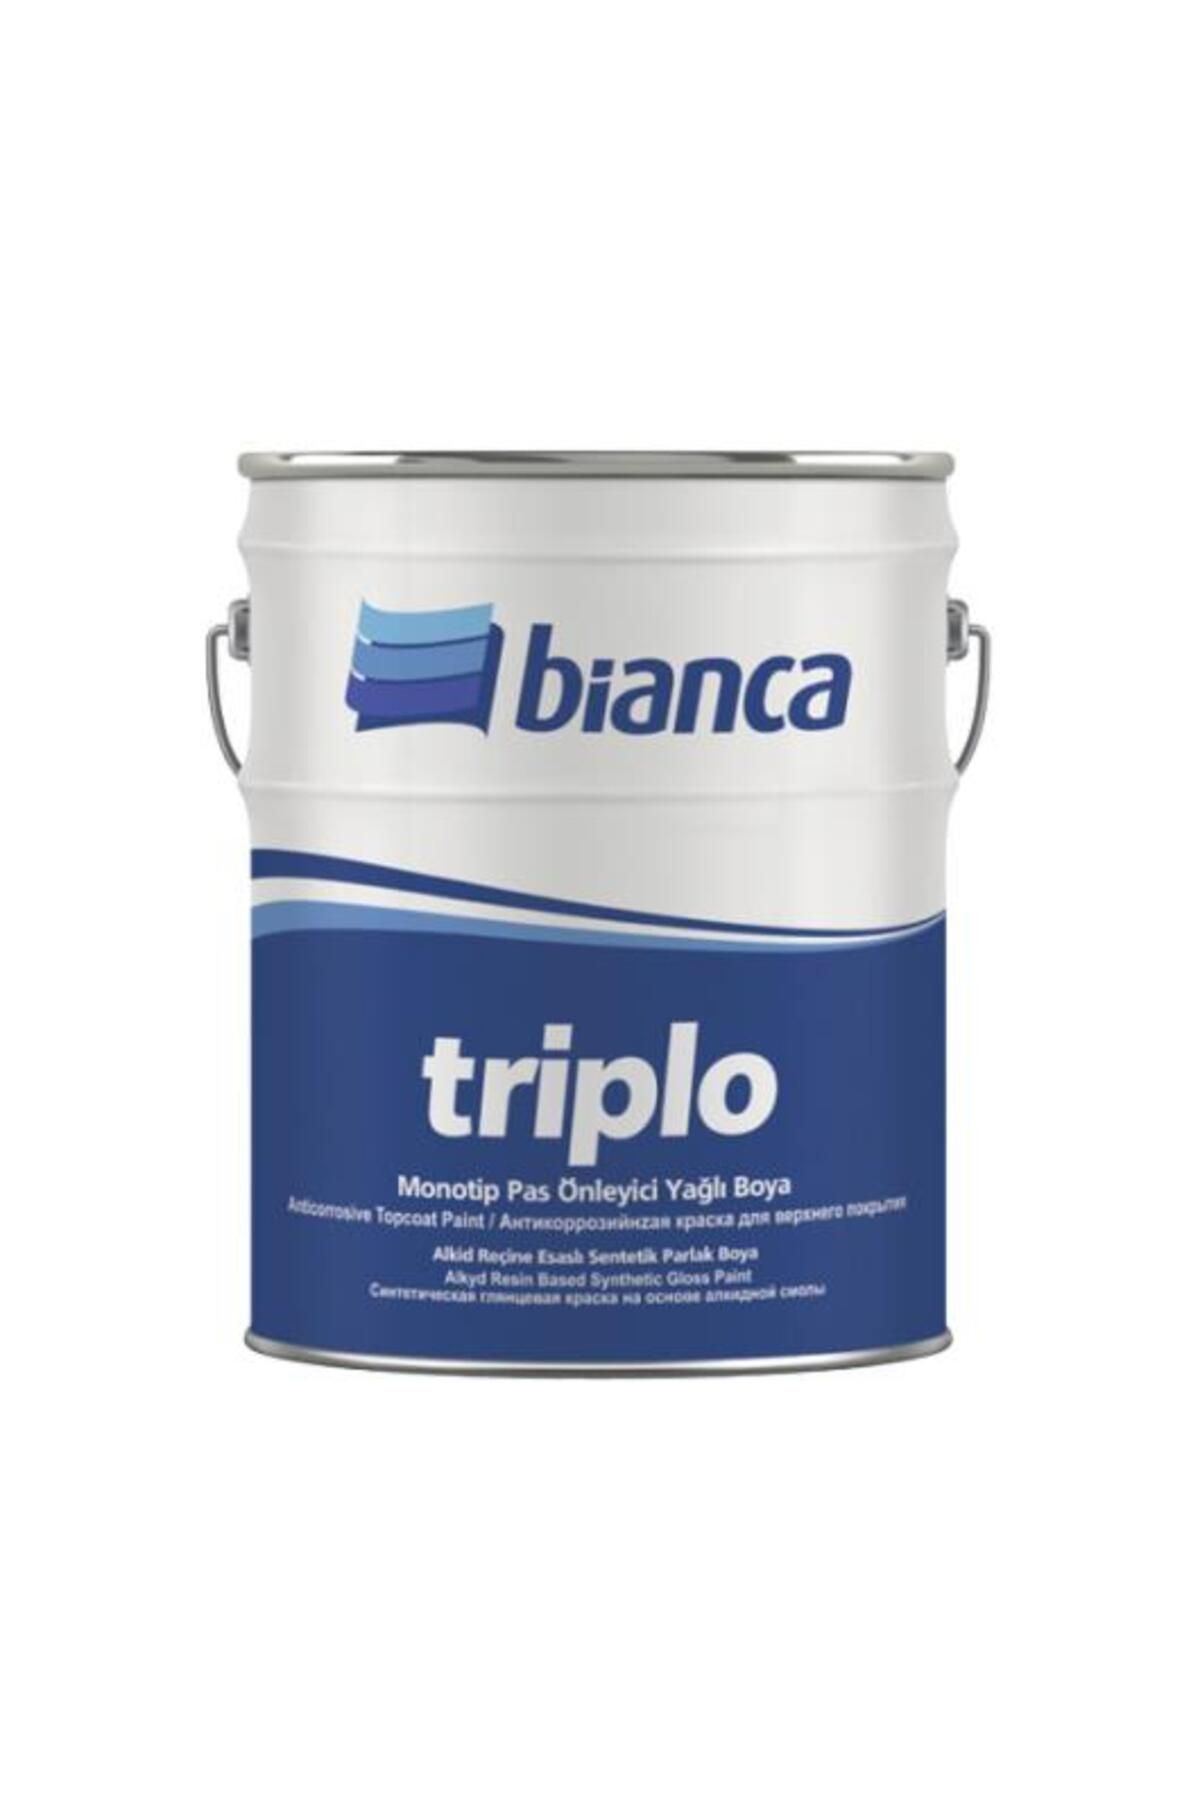 Bianca Triplo Monotip Pas Önleyici Boya 0.75lt 9003 Beyaz